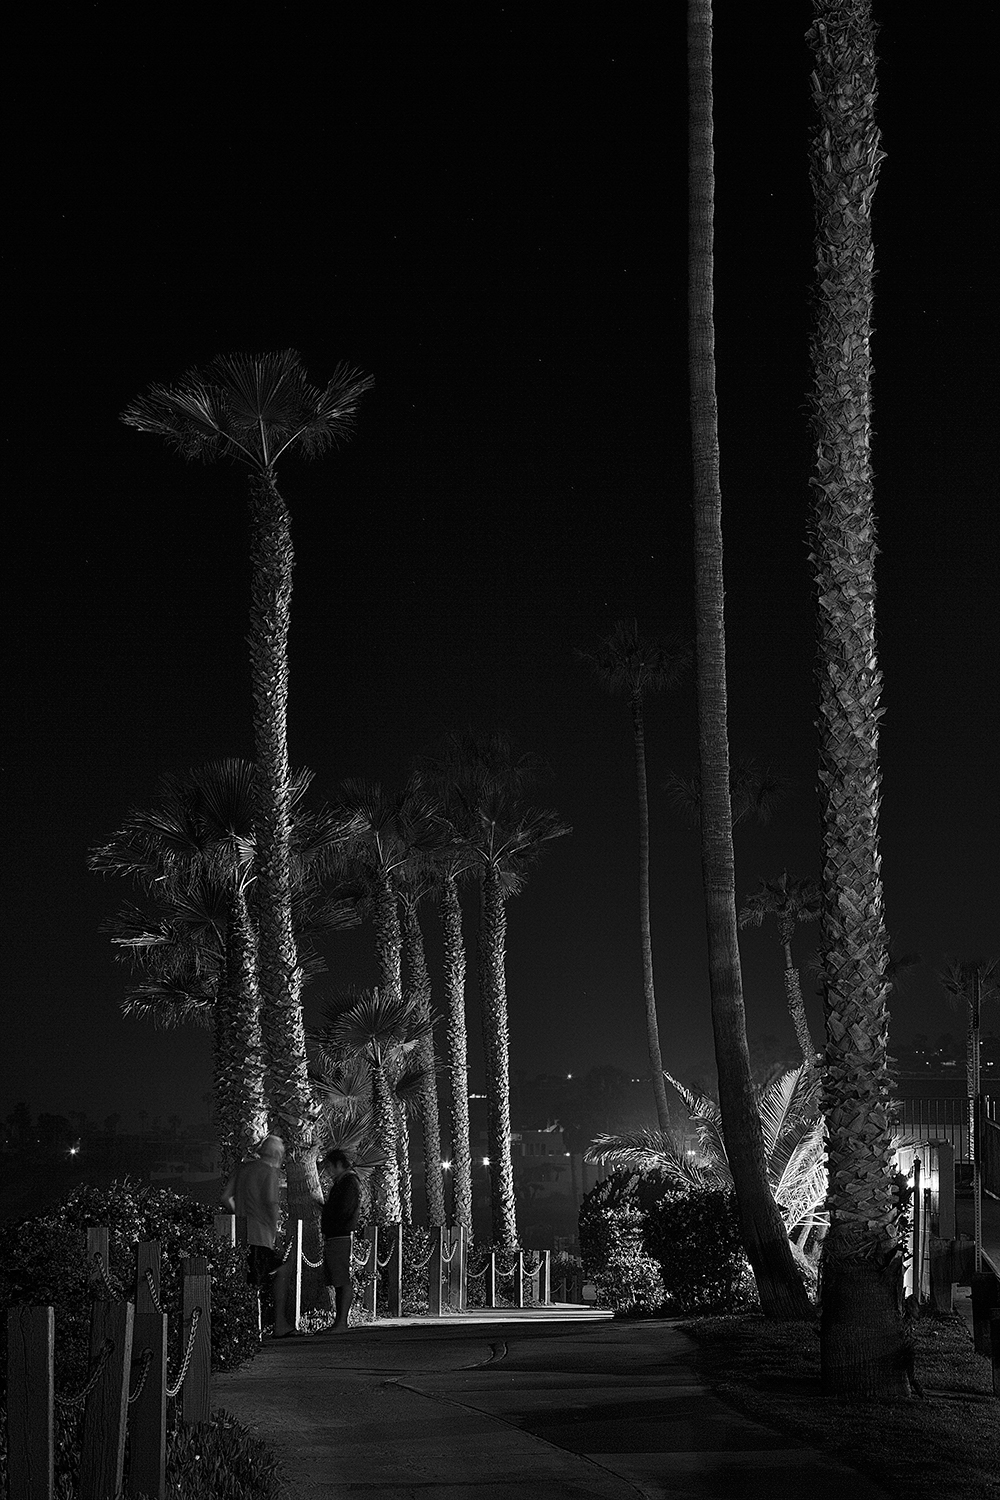 Night Palms